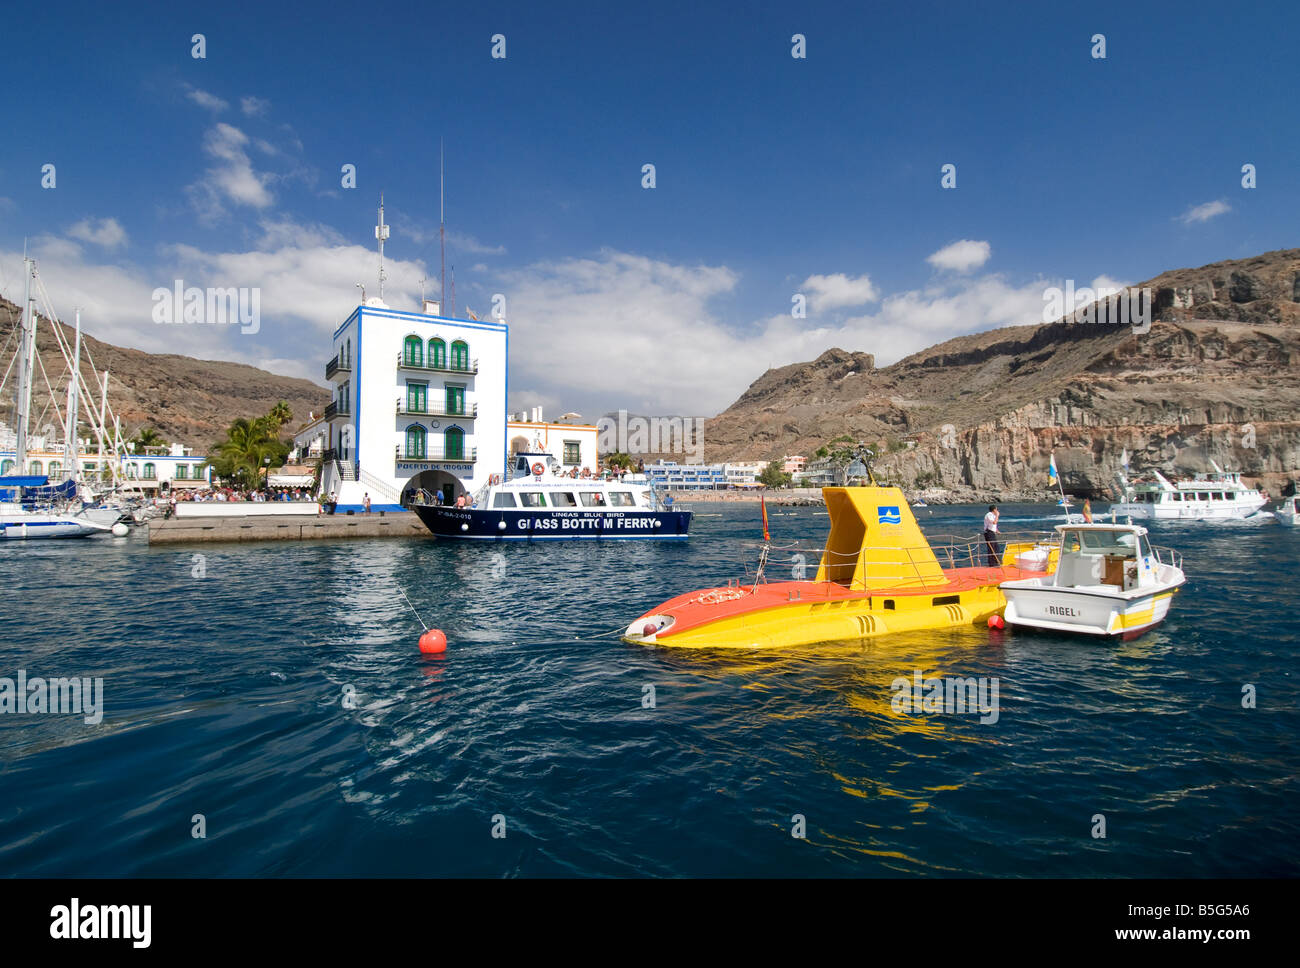 Tourist sottomarino giallo attrazione di Puerto Mogan crociera con barca pilota per visualizzare la vita marina dell'Oceano Atlantico off Gran Canaria costa Isole Canarie Foto Stock